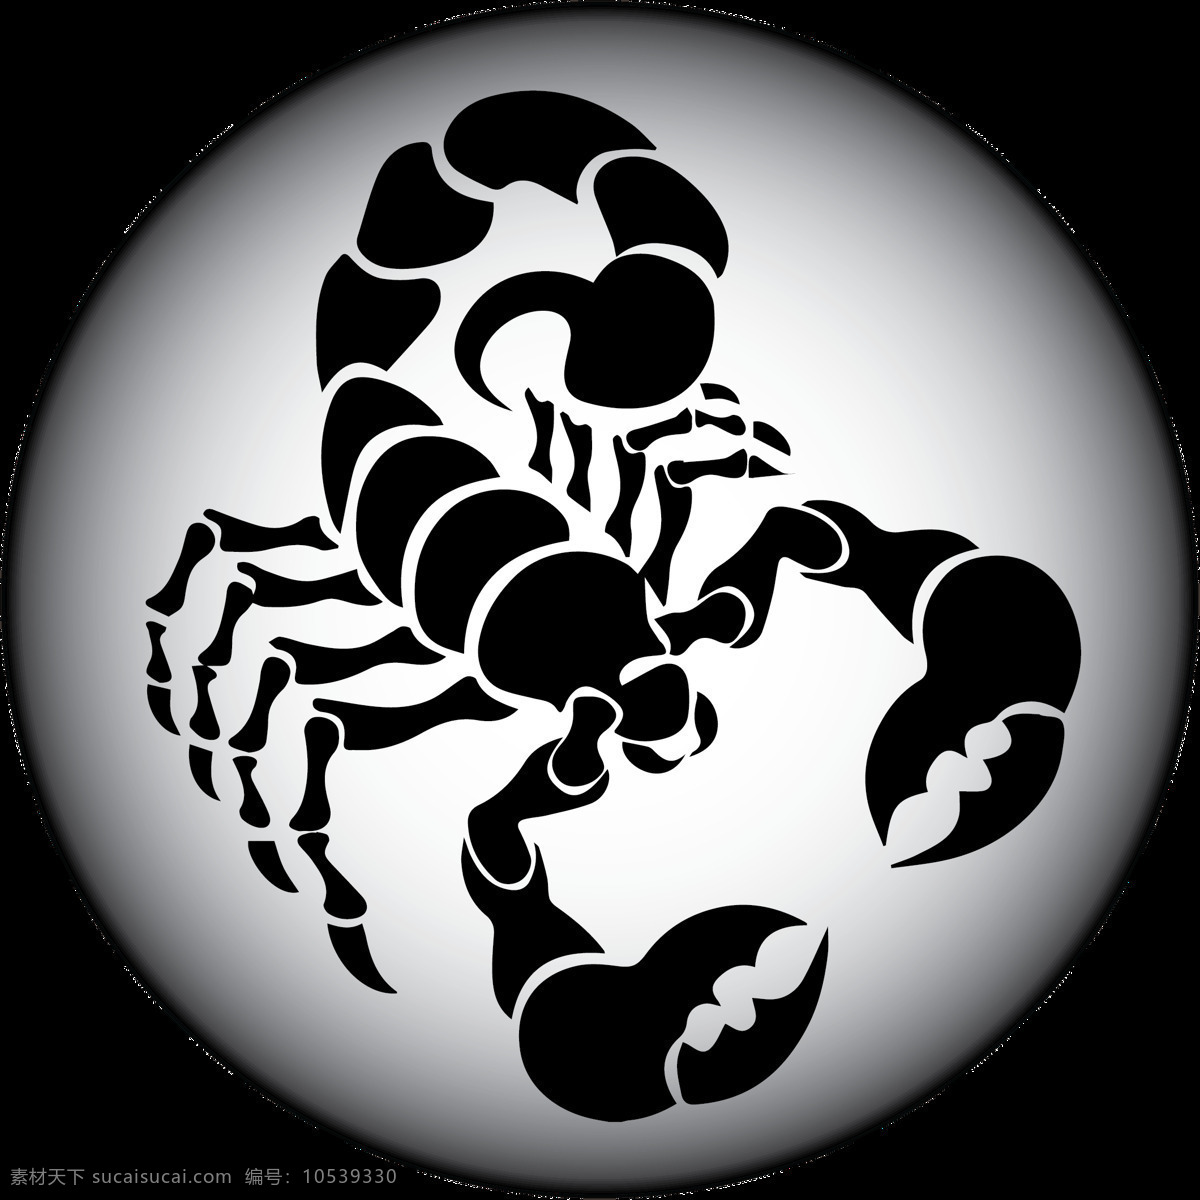 天蝎座 圆形 标志 免 抠 透明 天蝎座插画 天蝎座符号 天蝎座创意图 符号 logo 十二星座图 十二星座标志 十二星座符号